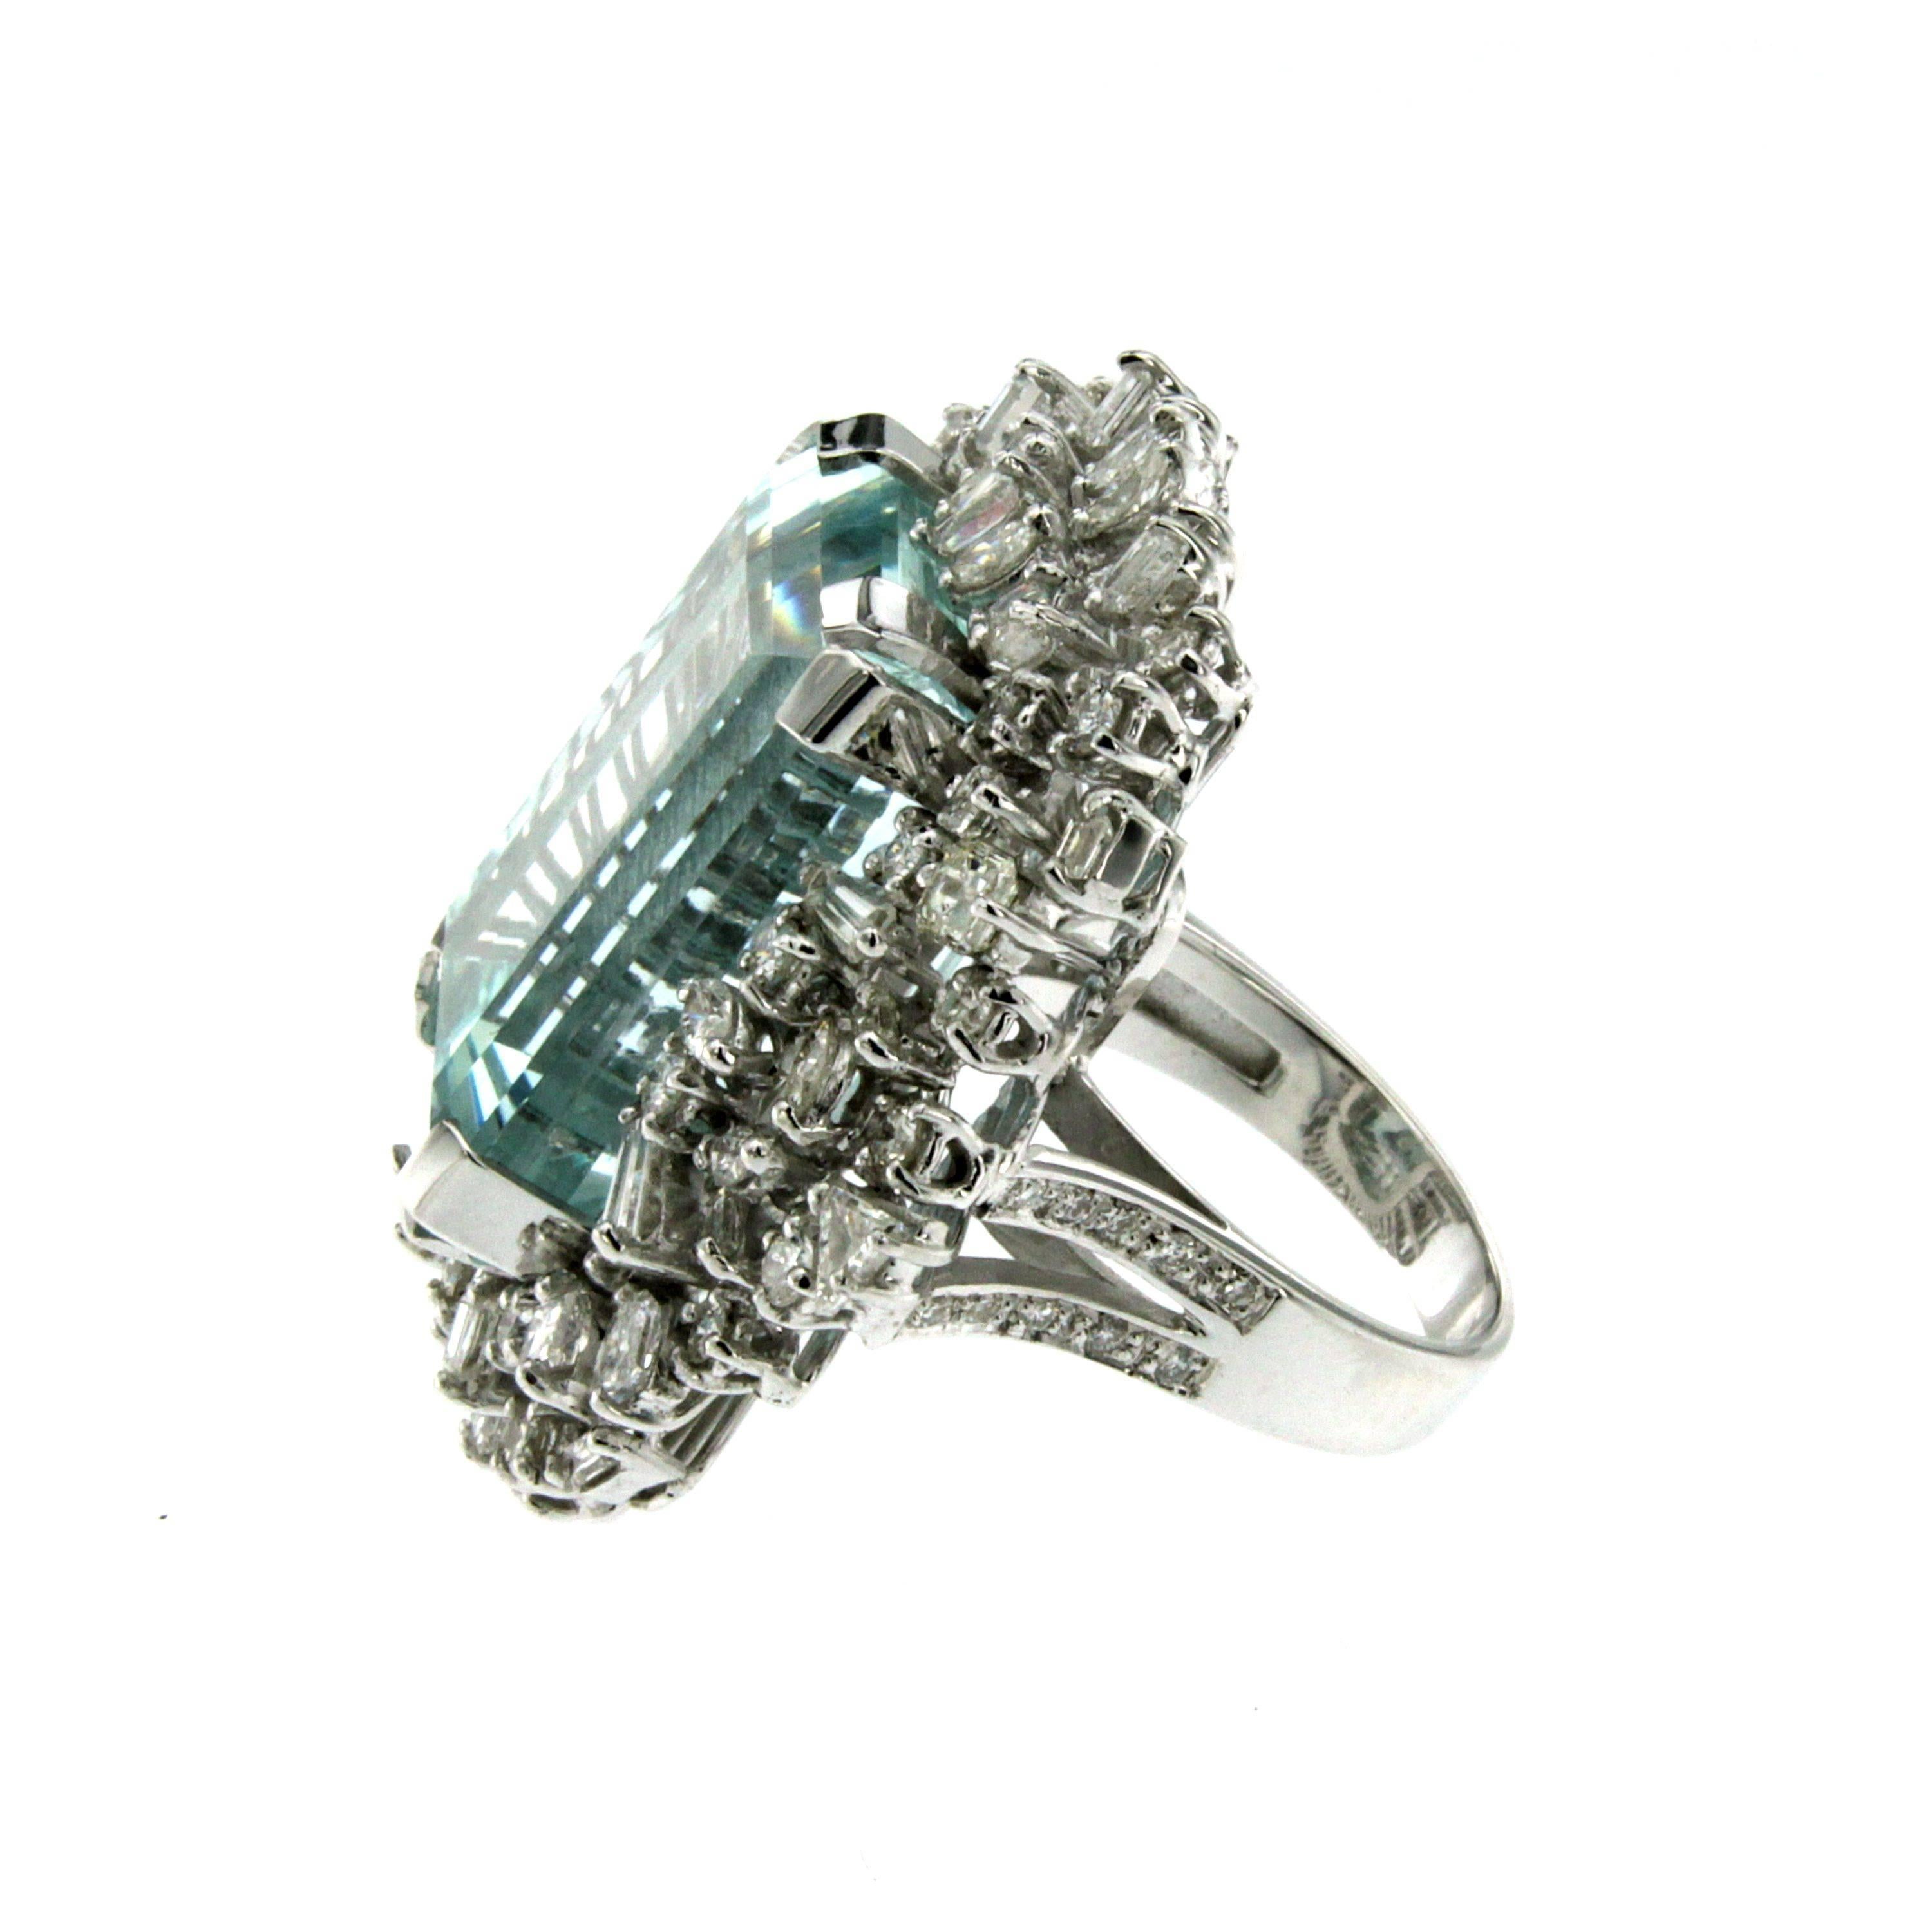 5 carat aquamarine ring price